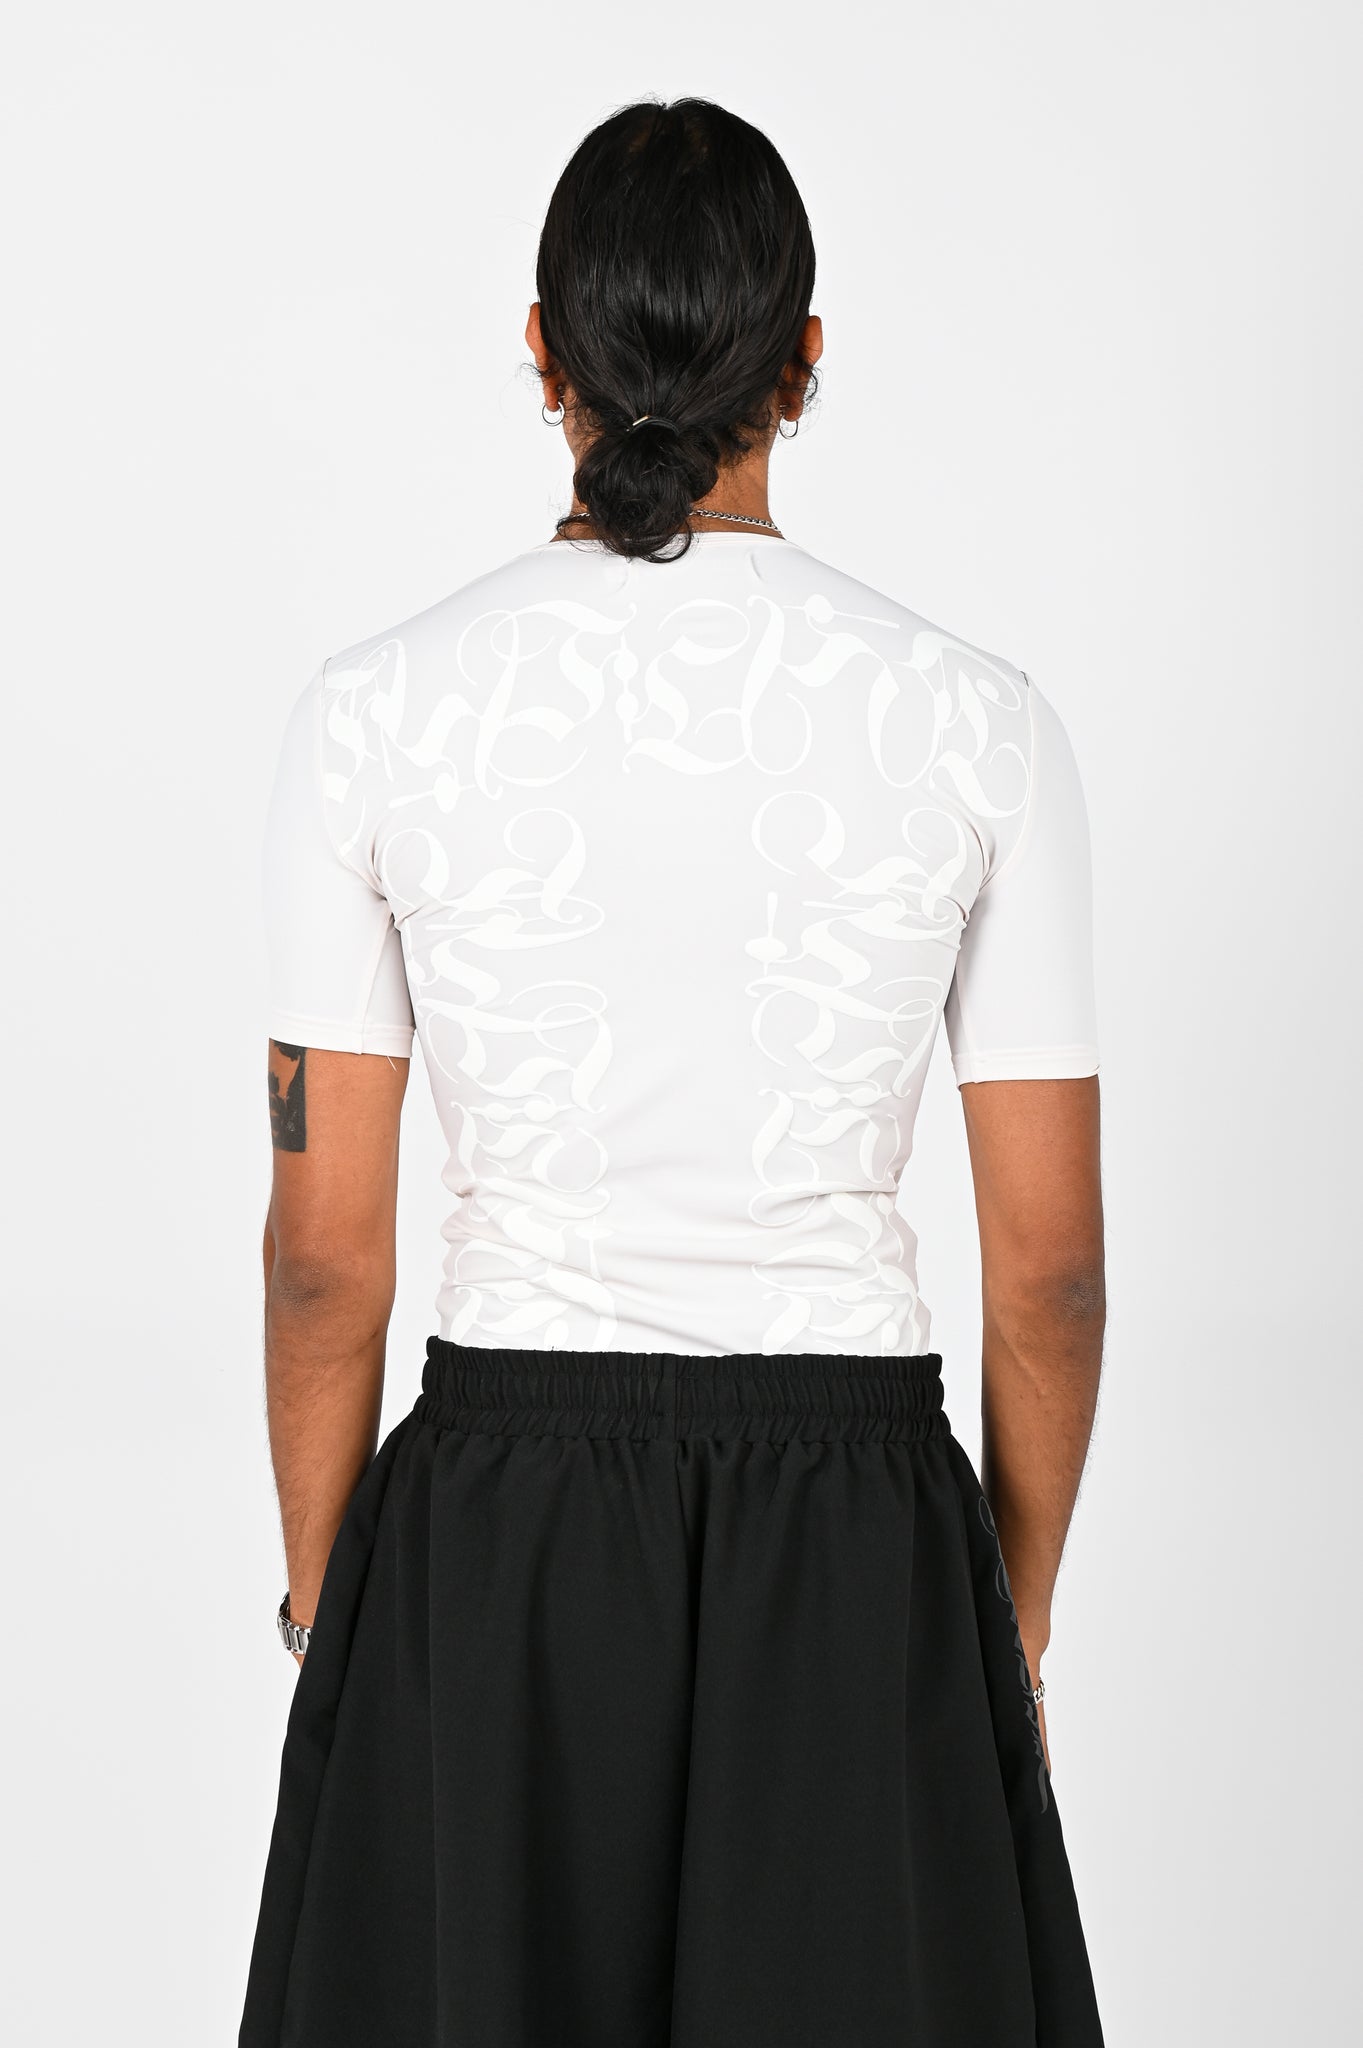 Posture Compression Top in White